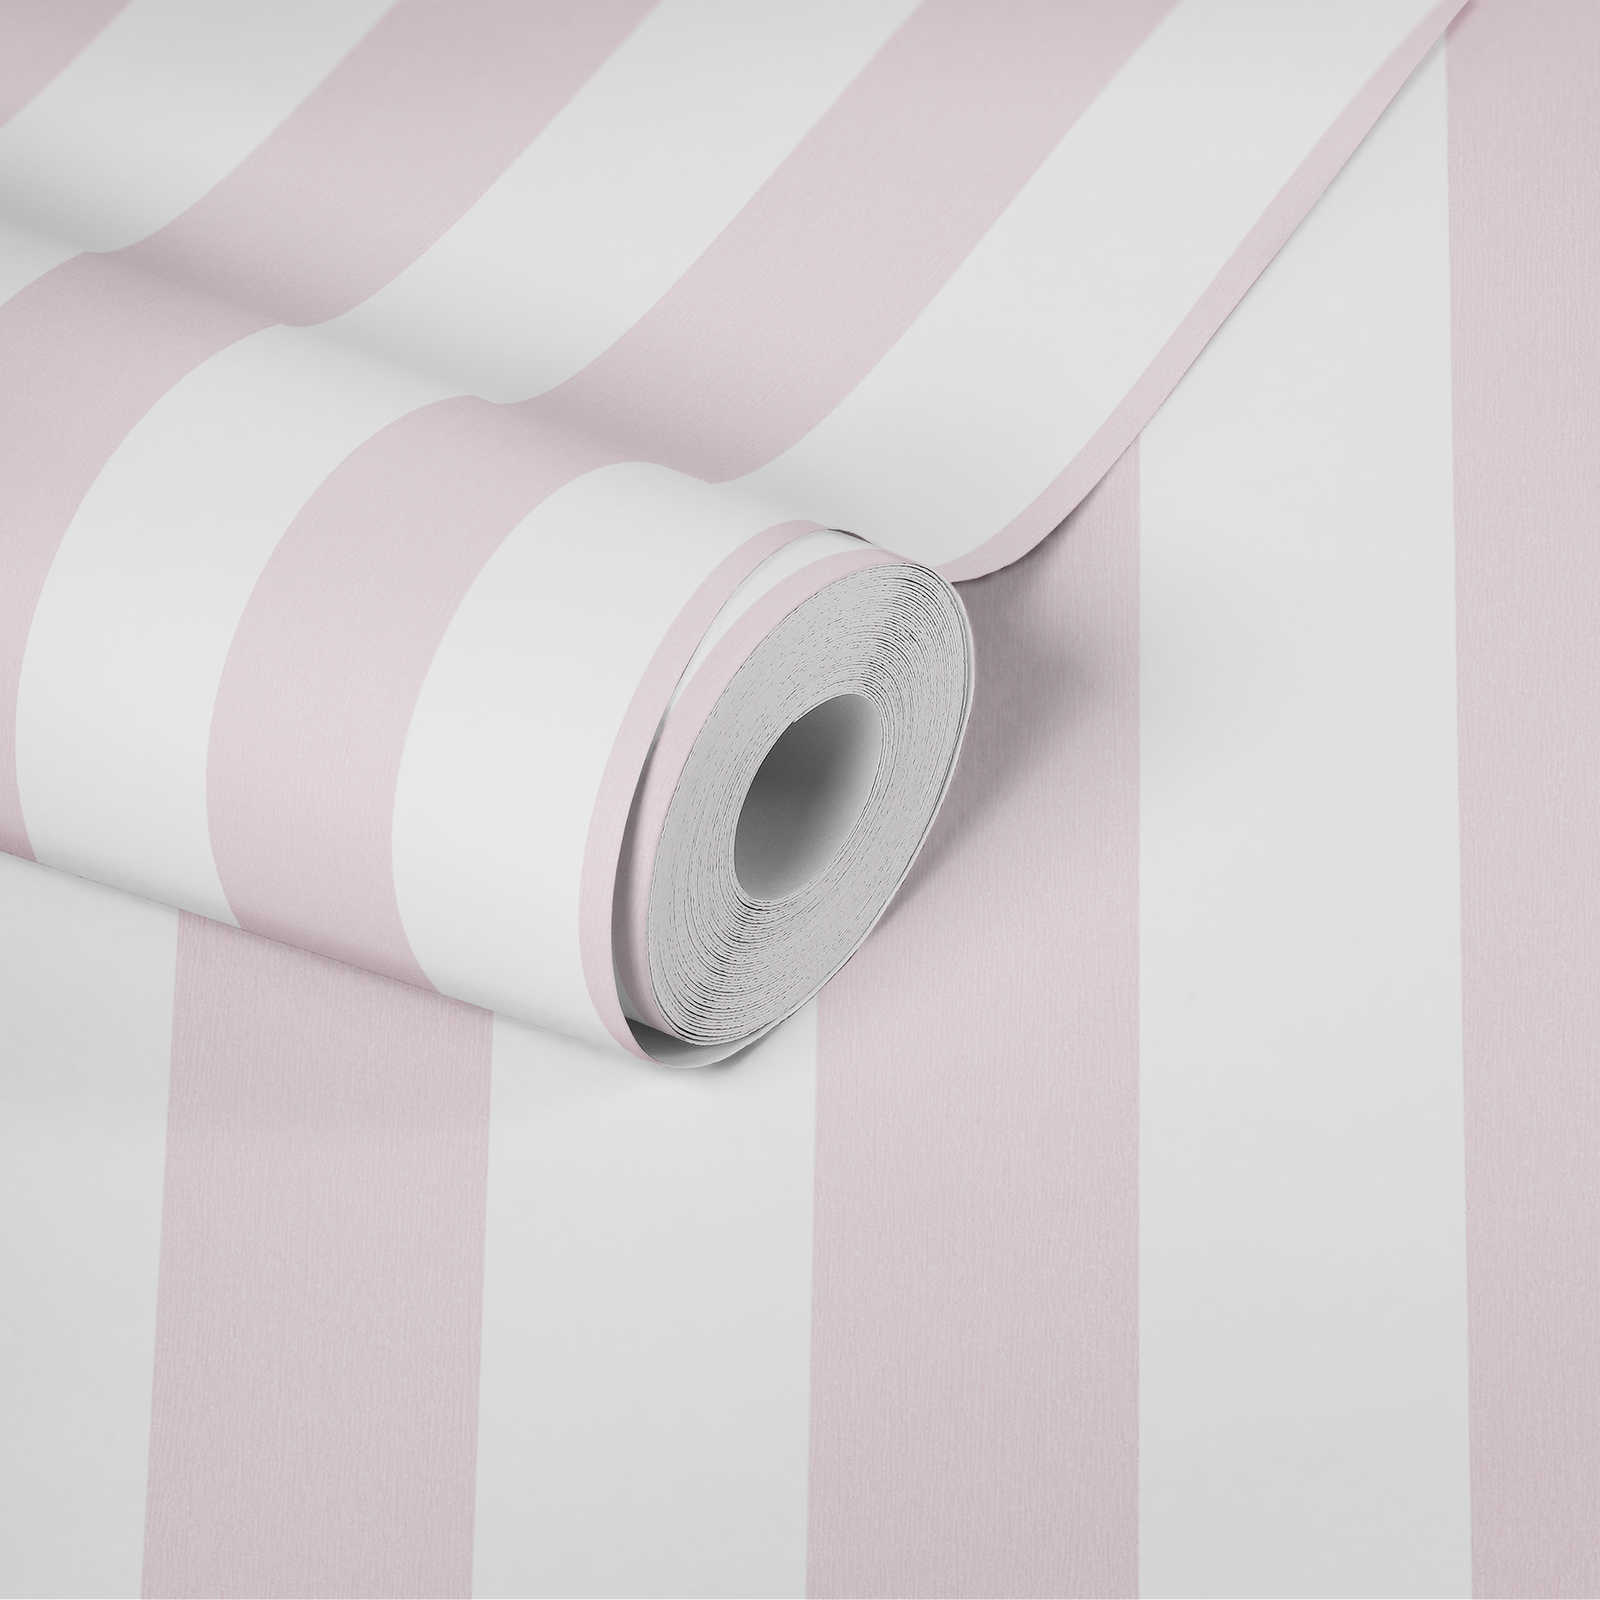             Chambre enfants filles papier peint rayures verticales - rose, blanc
        